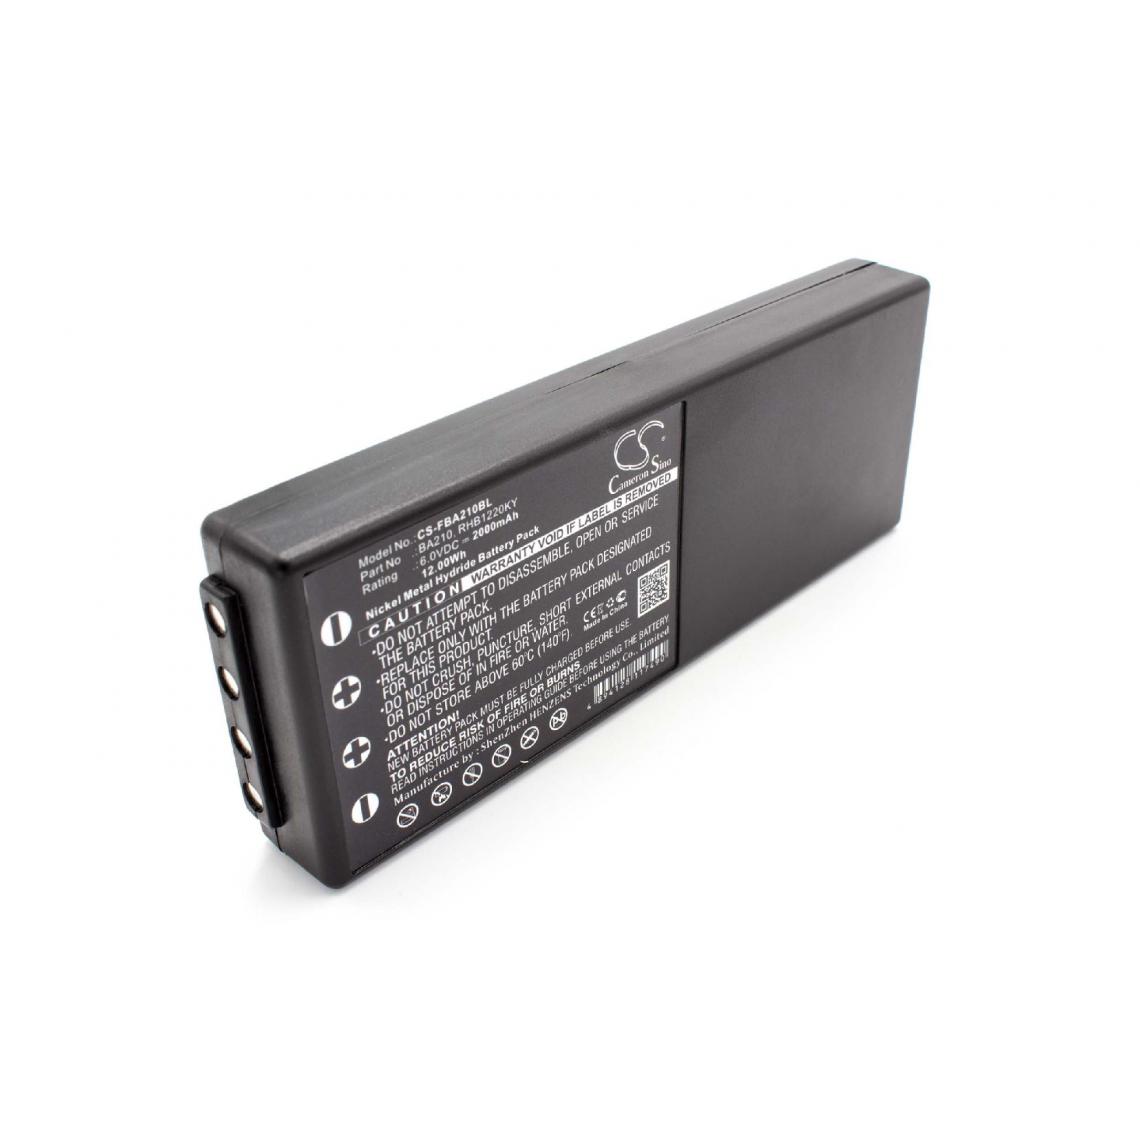 Vhbw - vhbw Batterie compatible avec Liebherr télécommande industrielle (2000mAh, 6V, NiMH) - Autre appareil de mesure